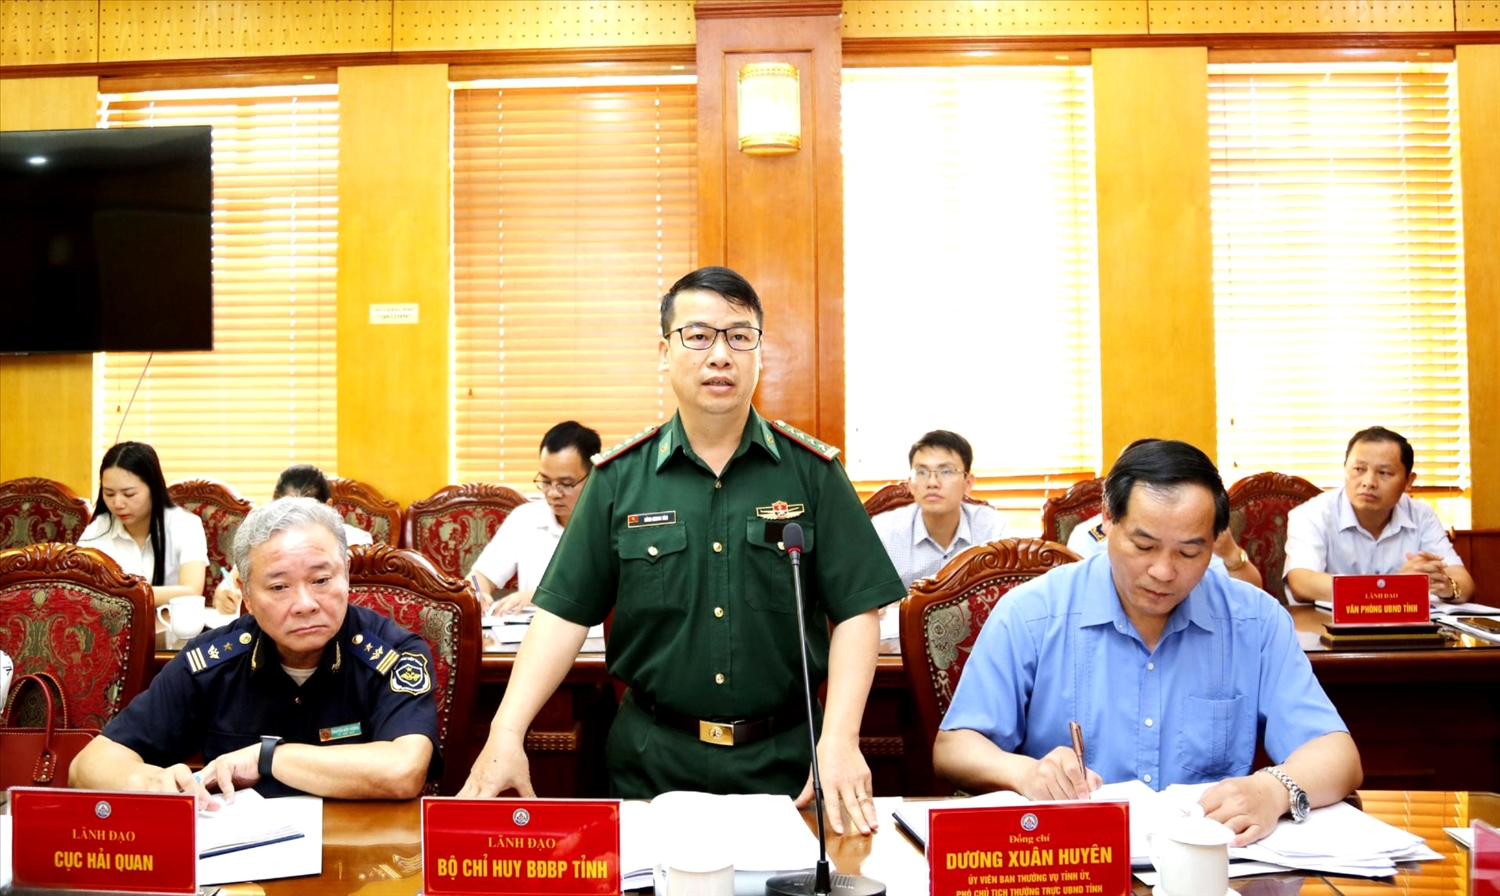 Đại tá Nông Quang Tám - Phó Chỉ huy trưởng Bộ Chỉ huy BĐBP tỉnh Lạng Sơn phát biểu tại cuộc họp triển khai việc ngăn chặn, phát hiện, xử lý kịp thời tình trạng vận chuyển trái phép hàng hóa qua biên giới